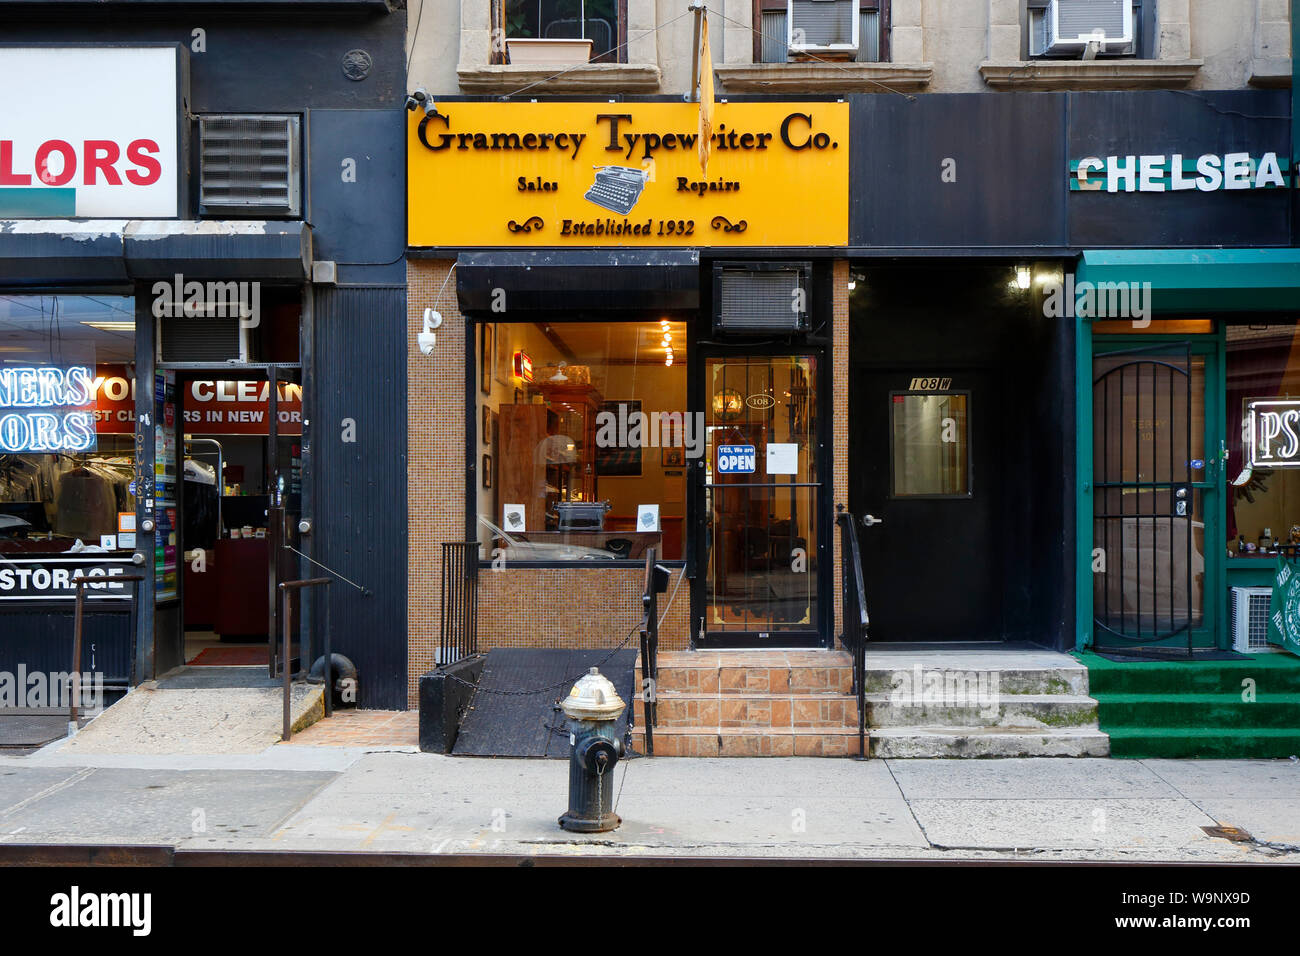 Gramercy Typewriter Company, 108 W. 17th Street, New York, NY devanture extérieure d'un atelier de réparation dans le quartier de Chelsea de Manhattan. Banque D'Images